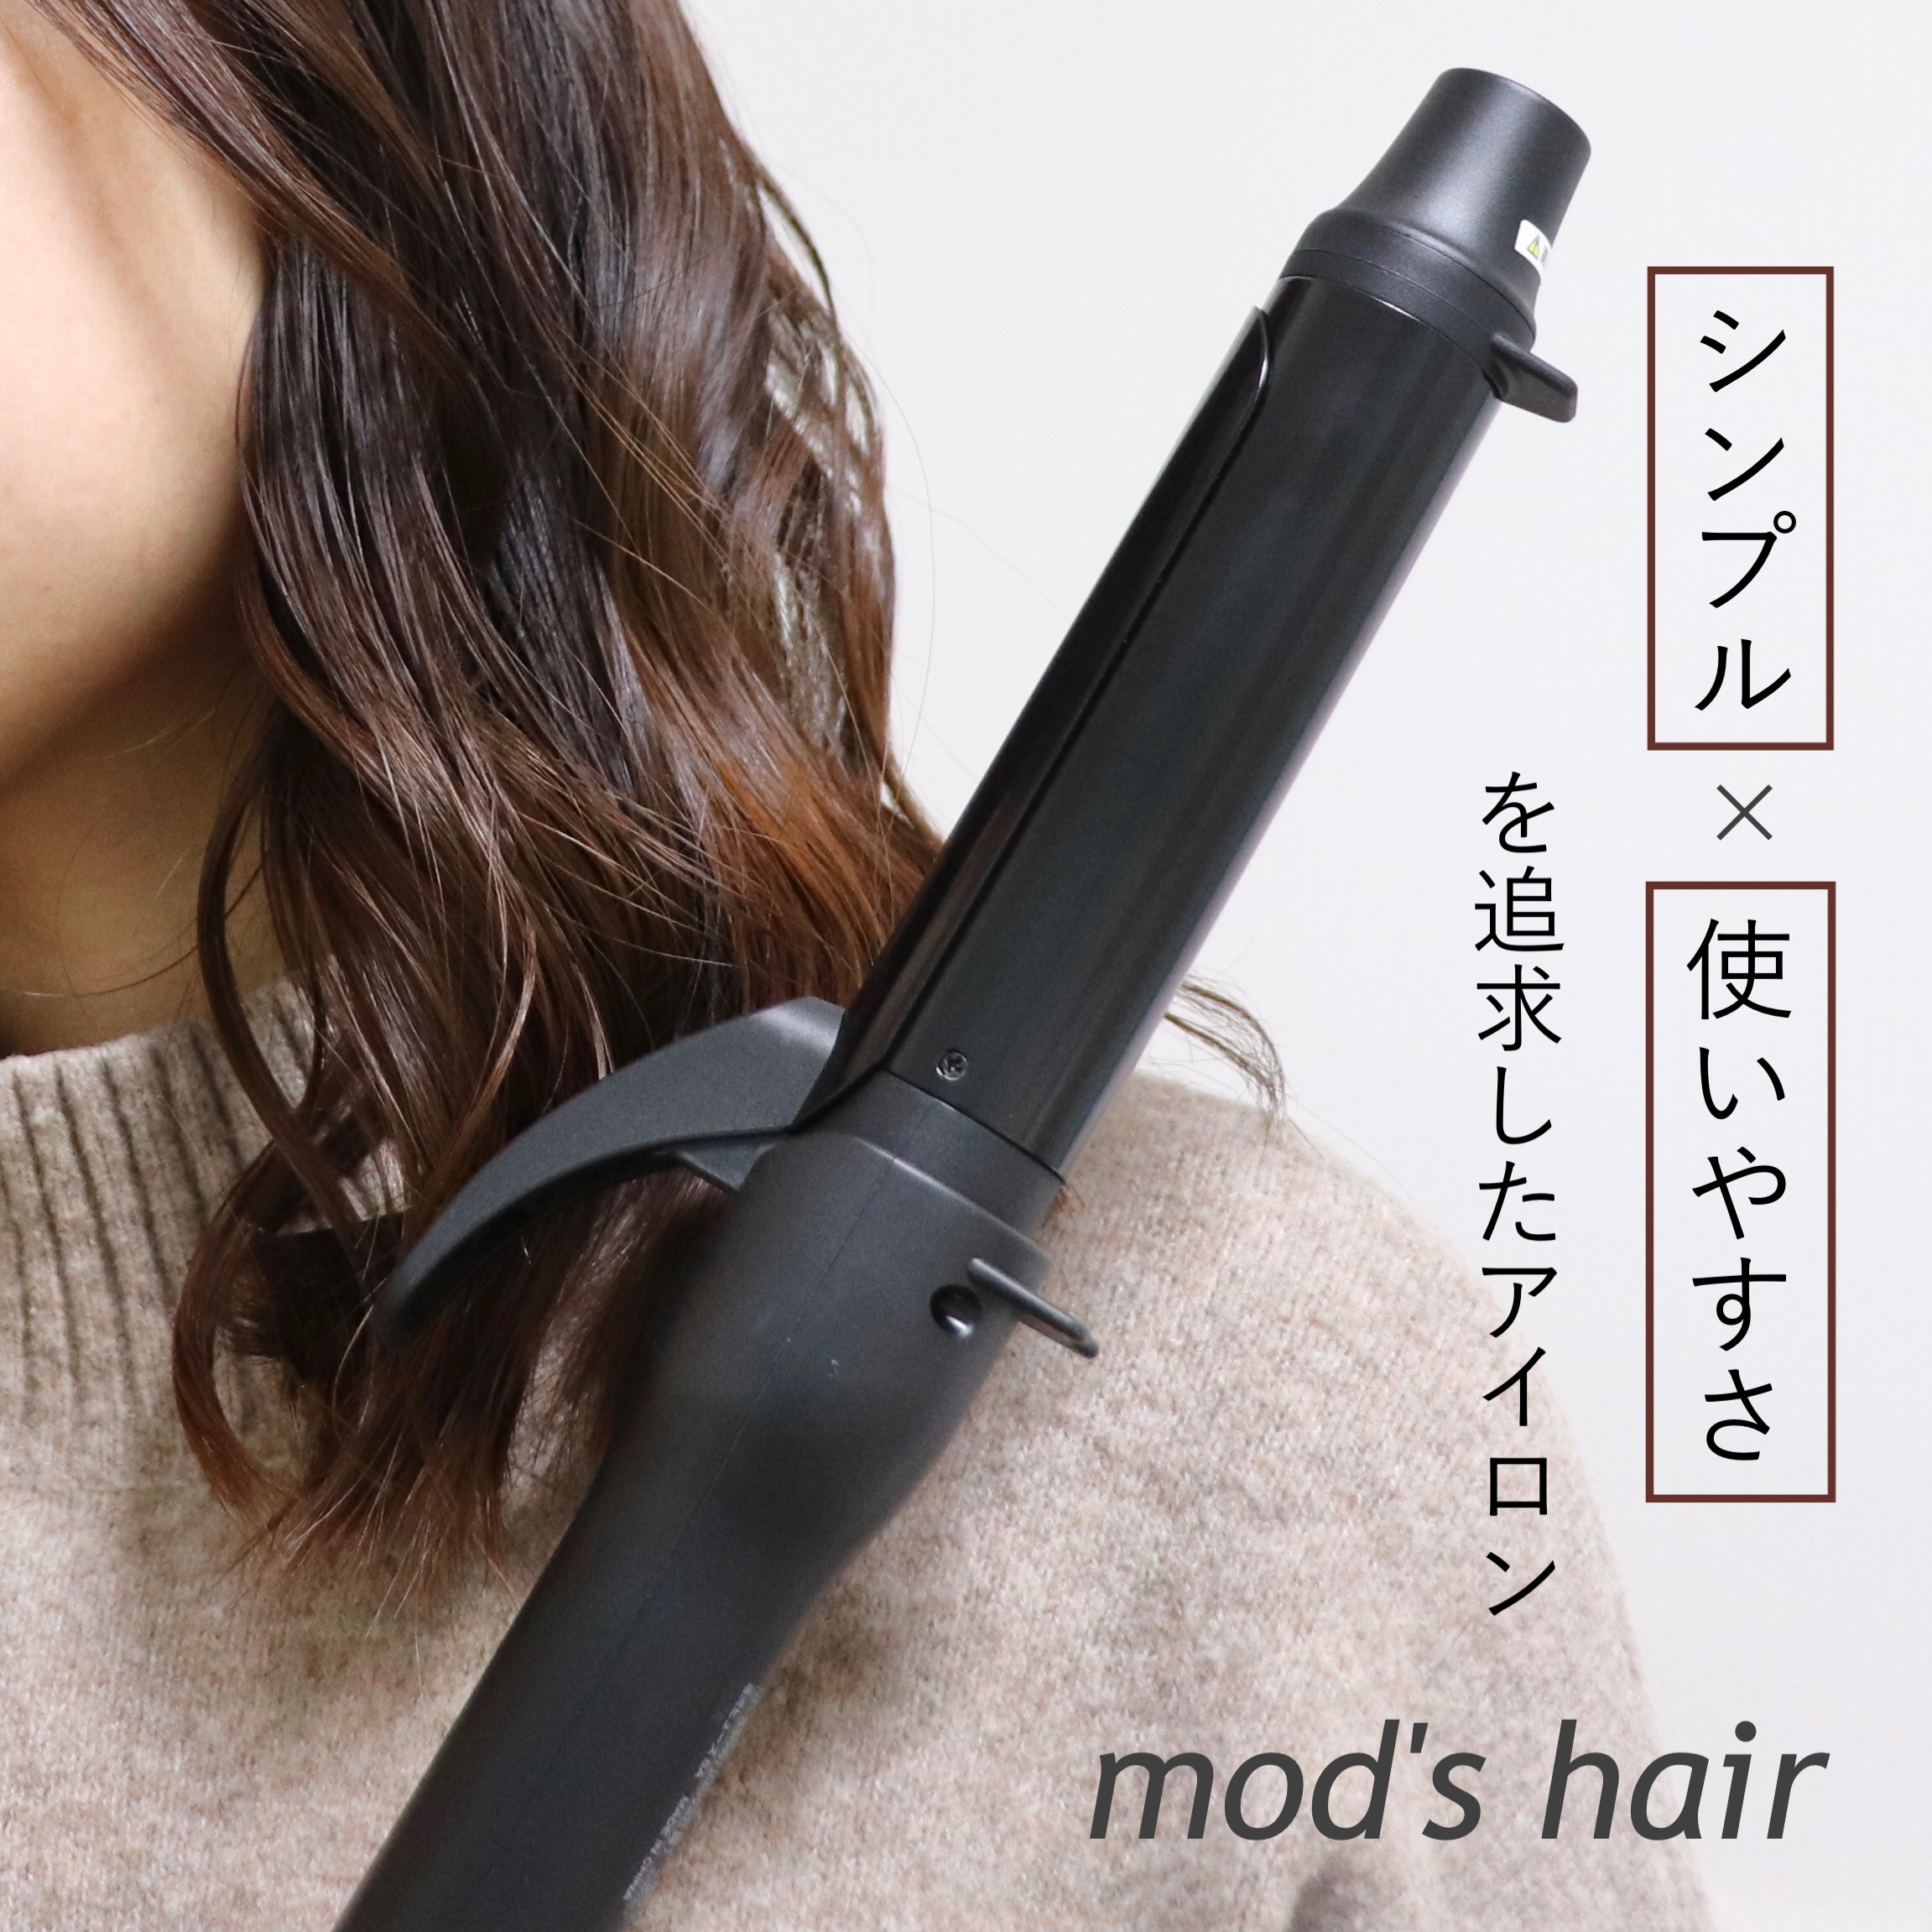 mod’s hair(モッズ・ヘア) スタイリッシュ カーリングアイロンの良い点・メリットに関するメ グ ミさんの口コミ画像1